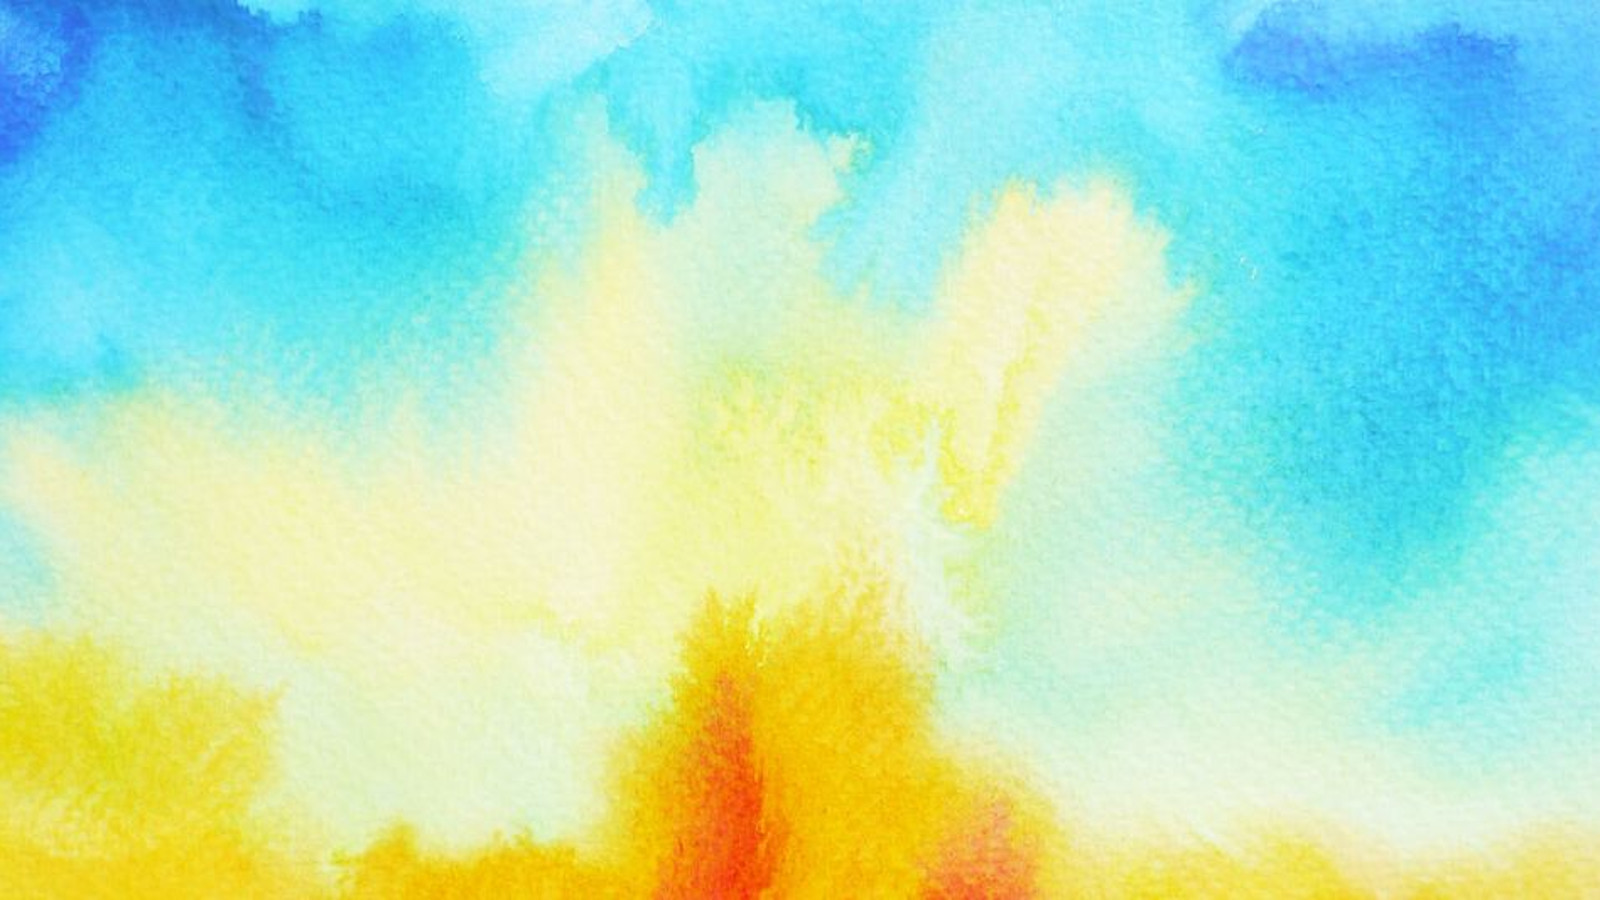 Kuvassa on taideteos, jossa on pilvimäisiä värejä.  Alhaalla on oranssia ja keltaista ja ylempänä sinisiä värejä.